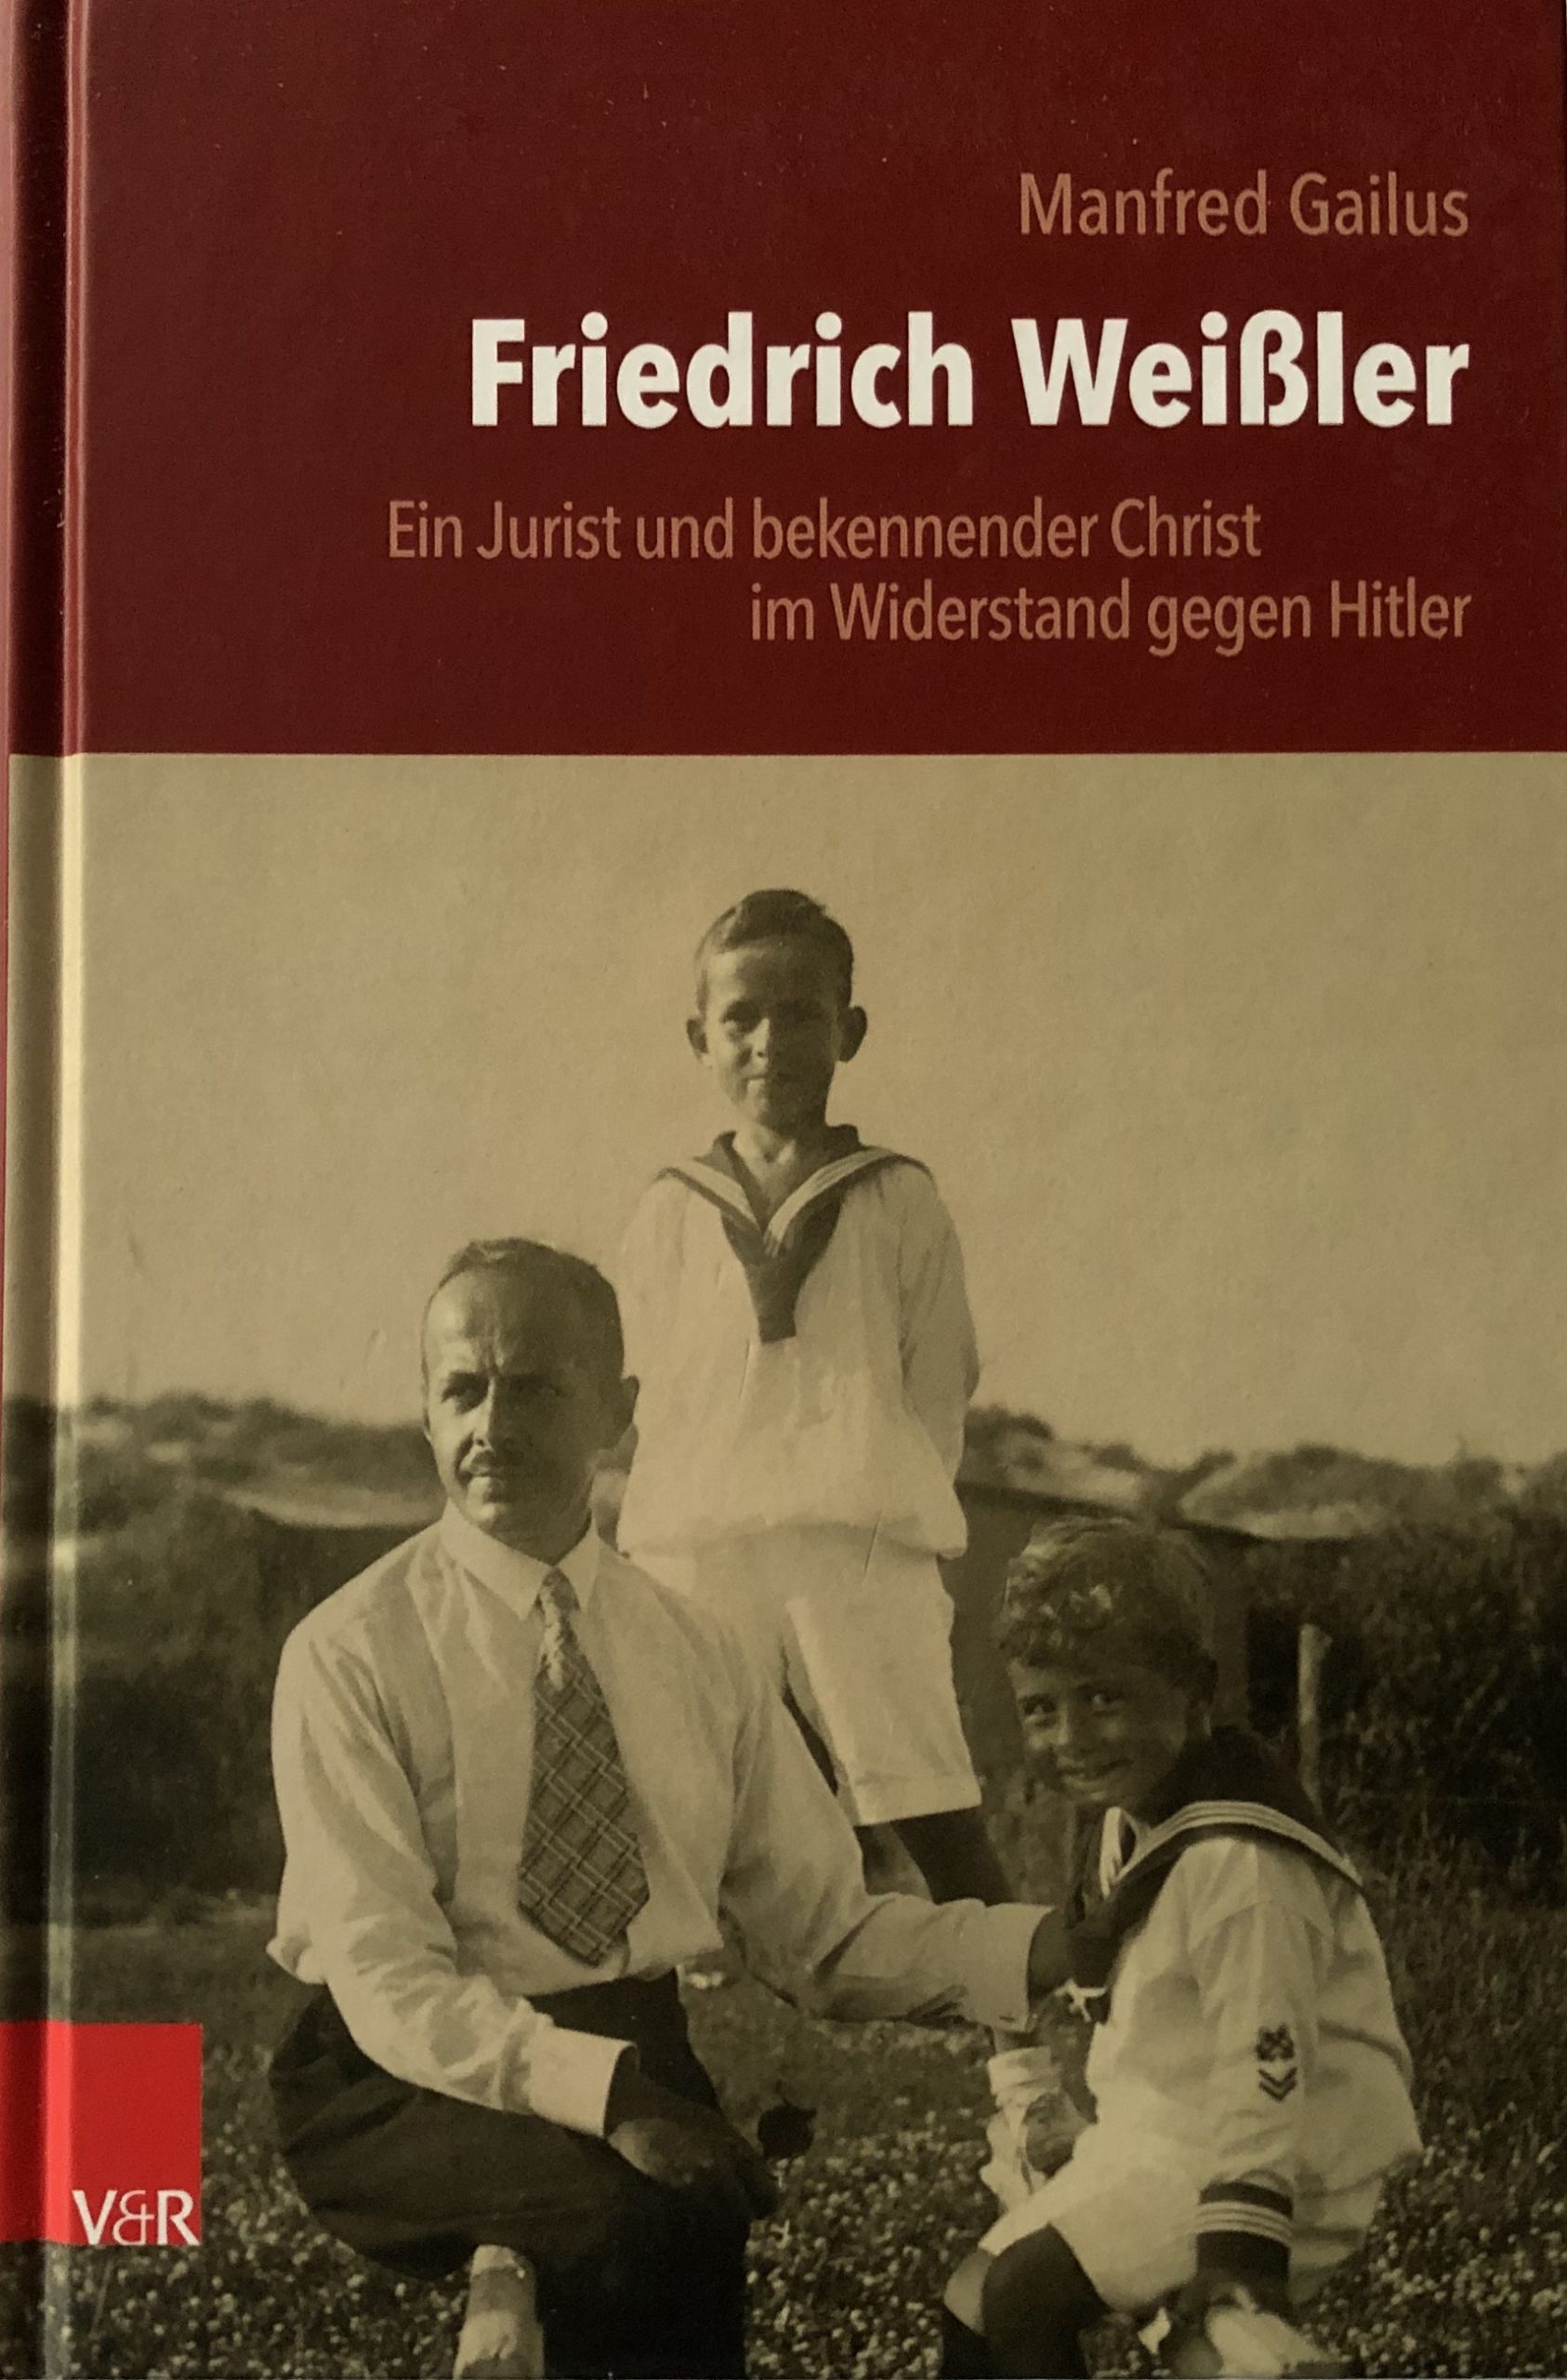 Buchcover zur Biographie über Friedrich Weißler